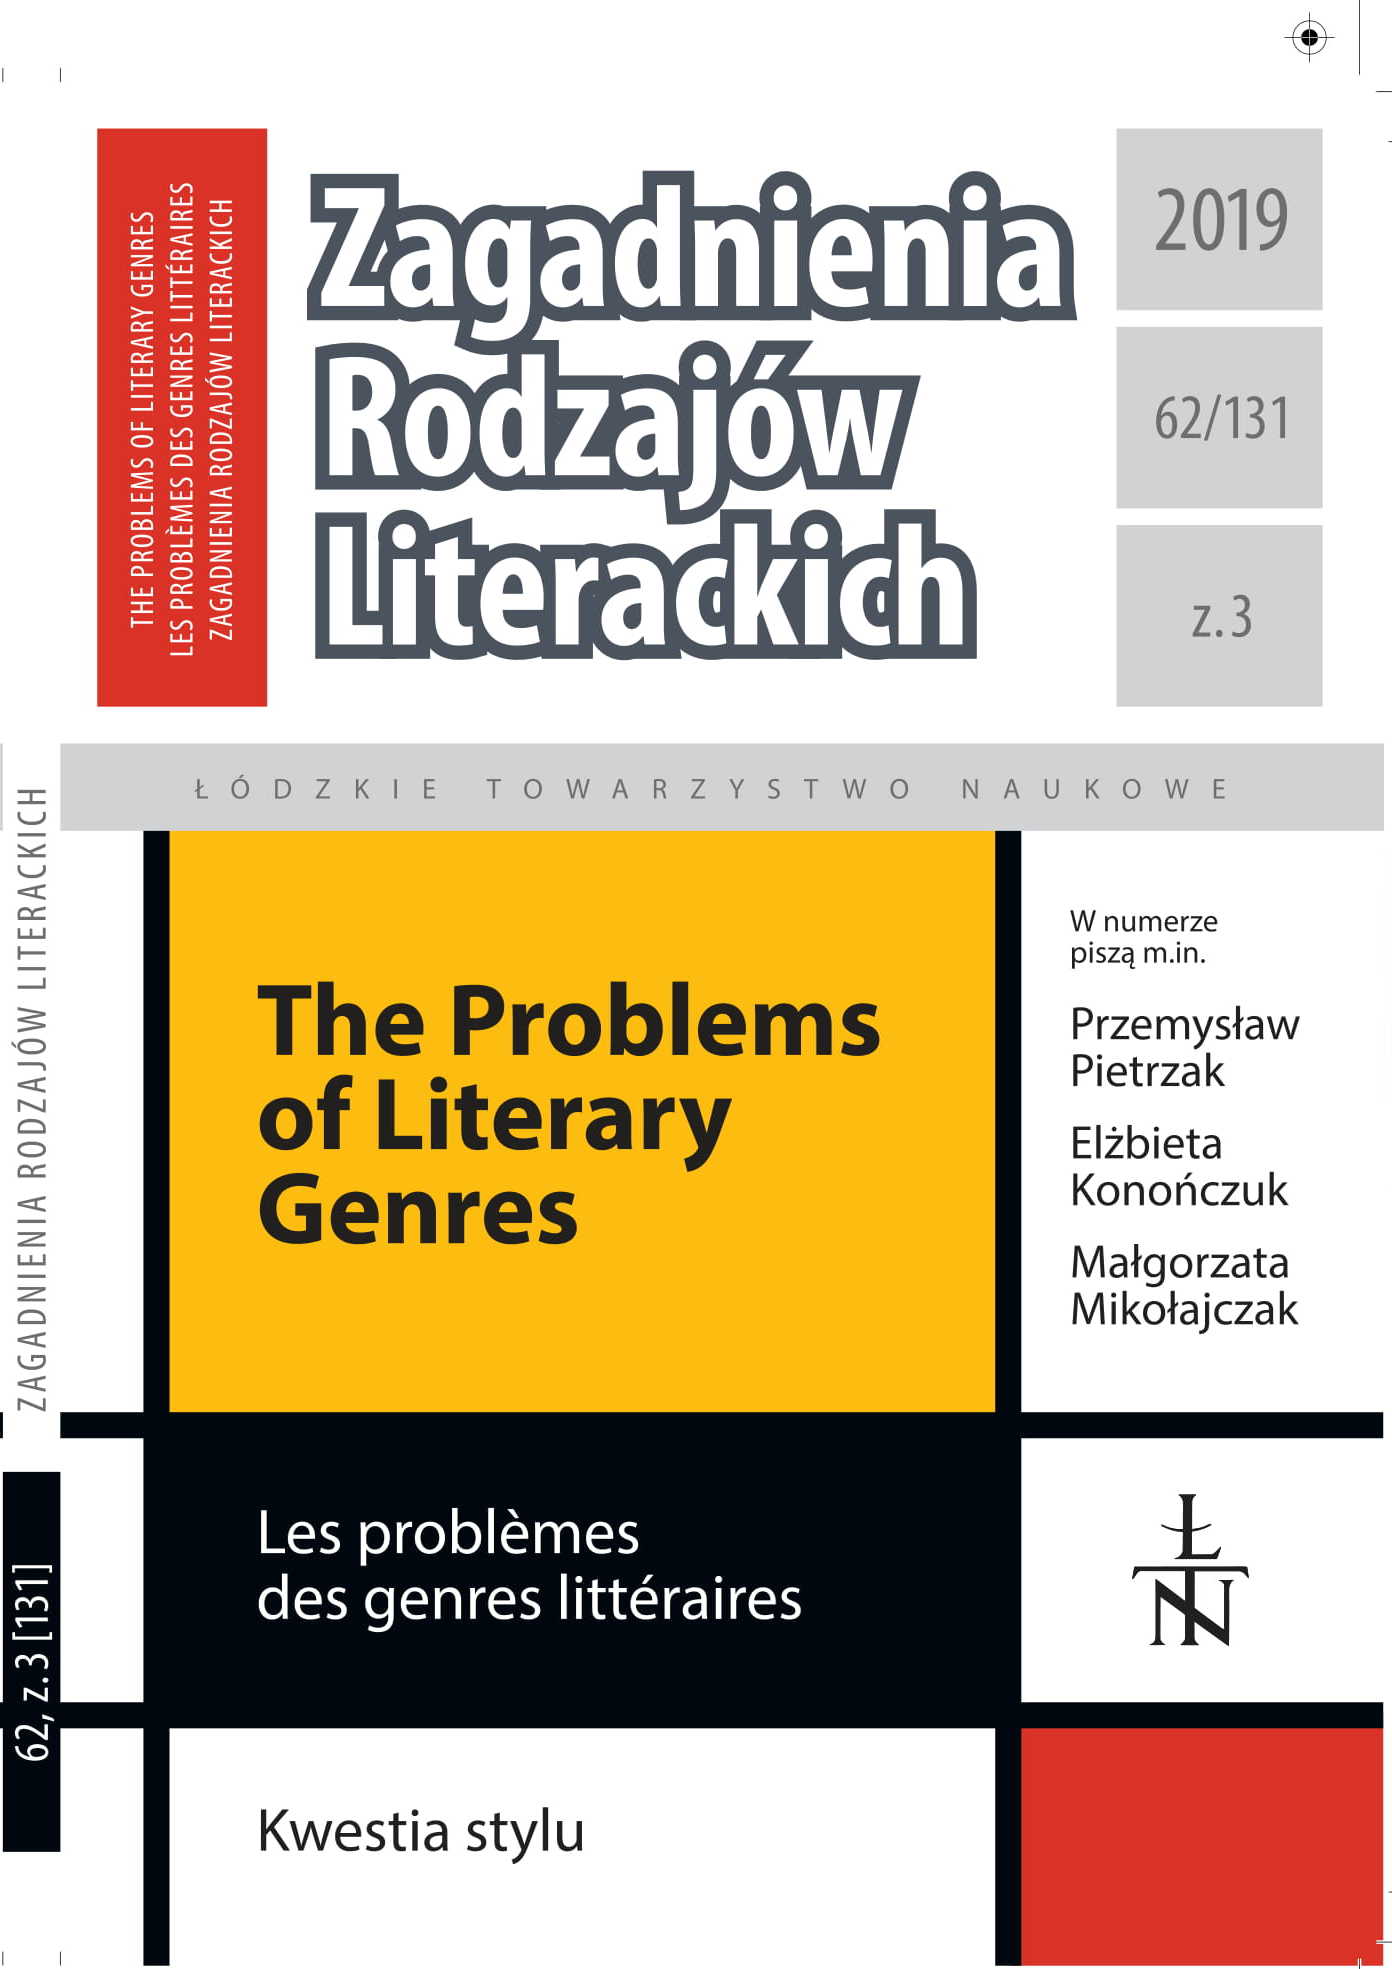 Academic Work is Leaving the Mind to a Feeling of Constant Insufficiency. Stefania Skwarczyńska’s Letters to Czesław Zgorzelski